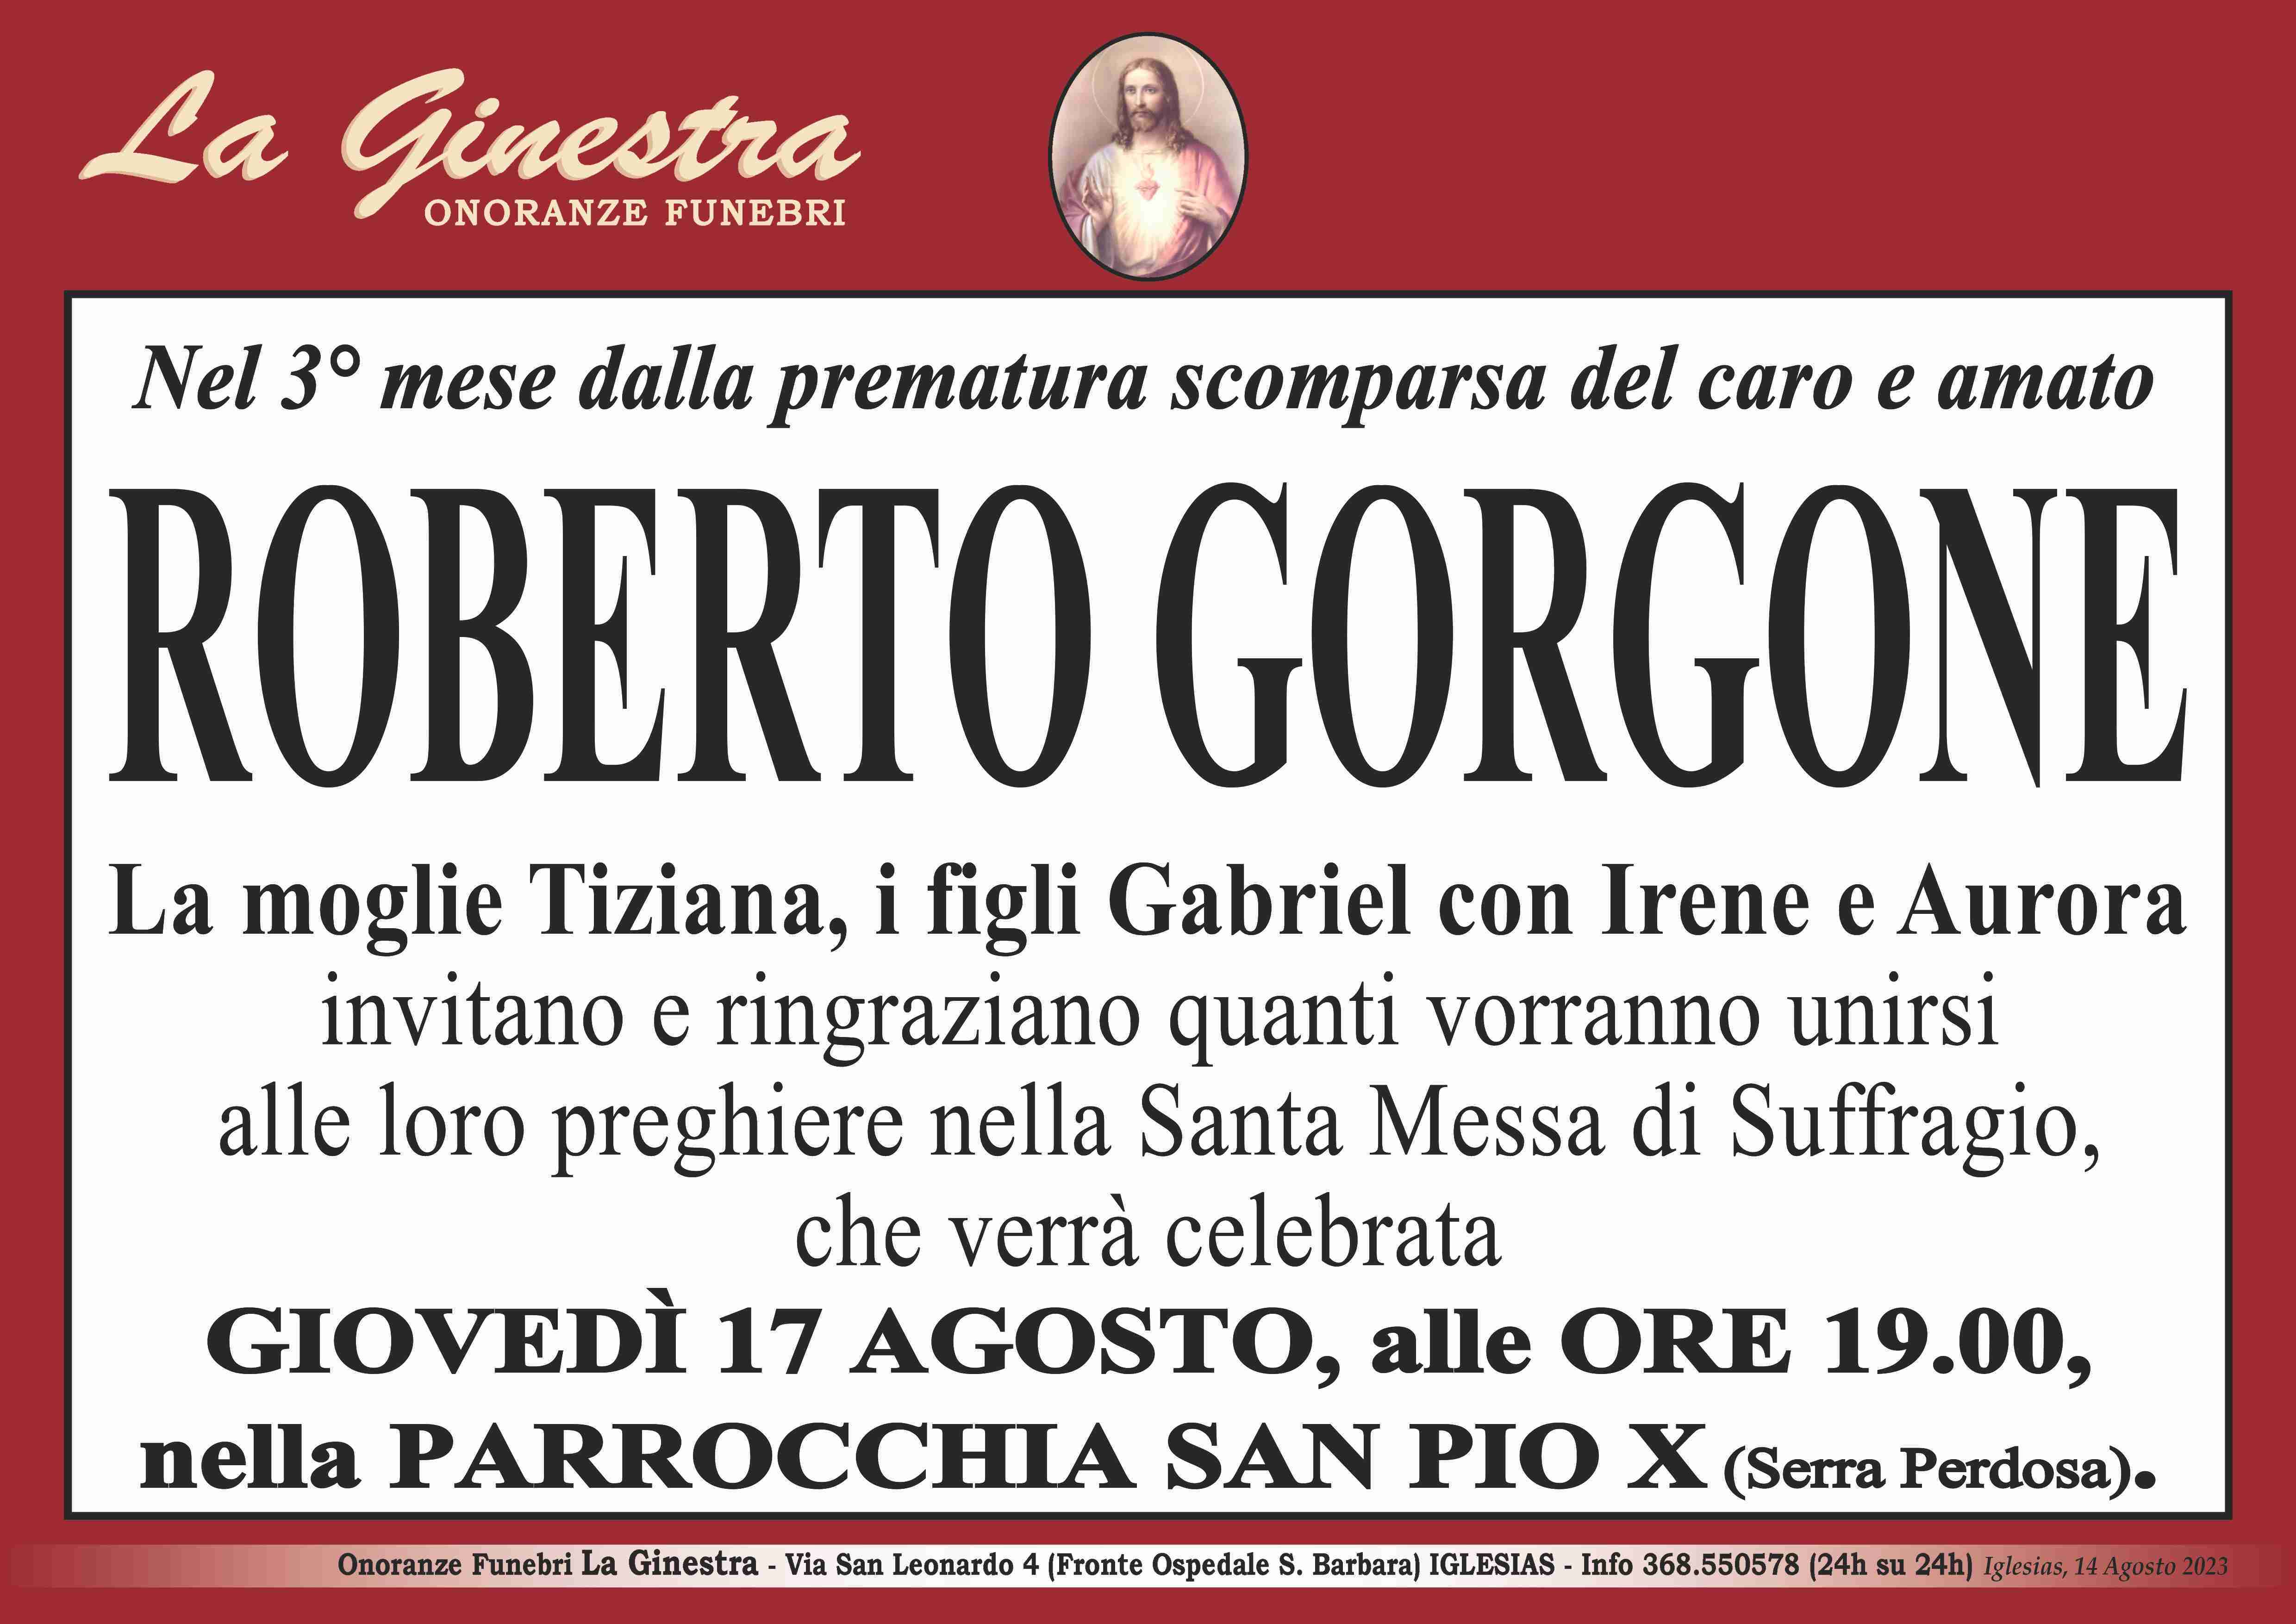 Roberto Gorgone